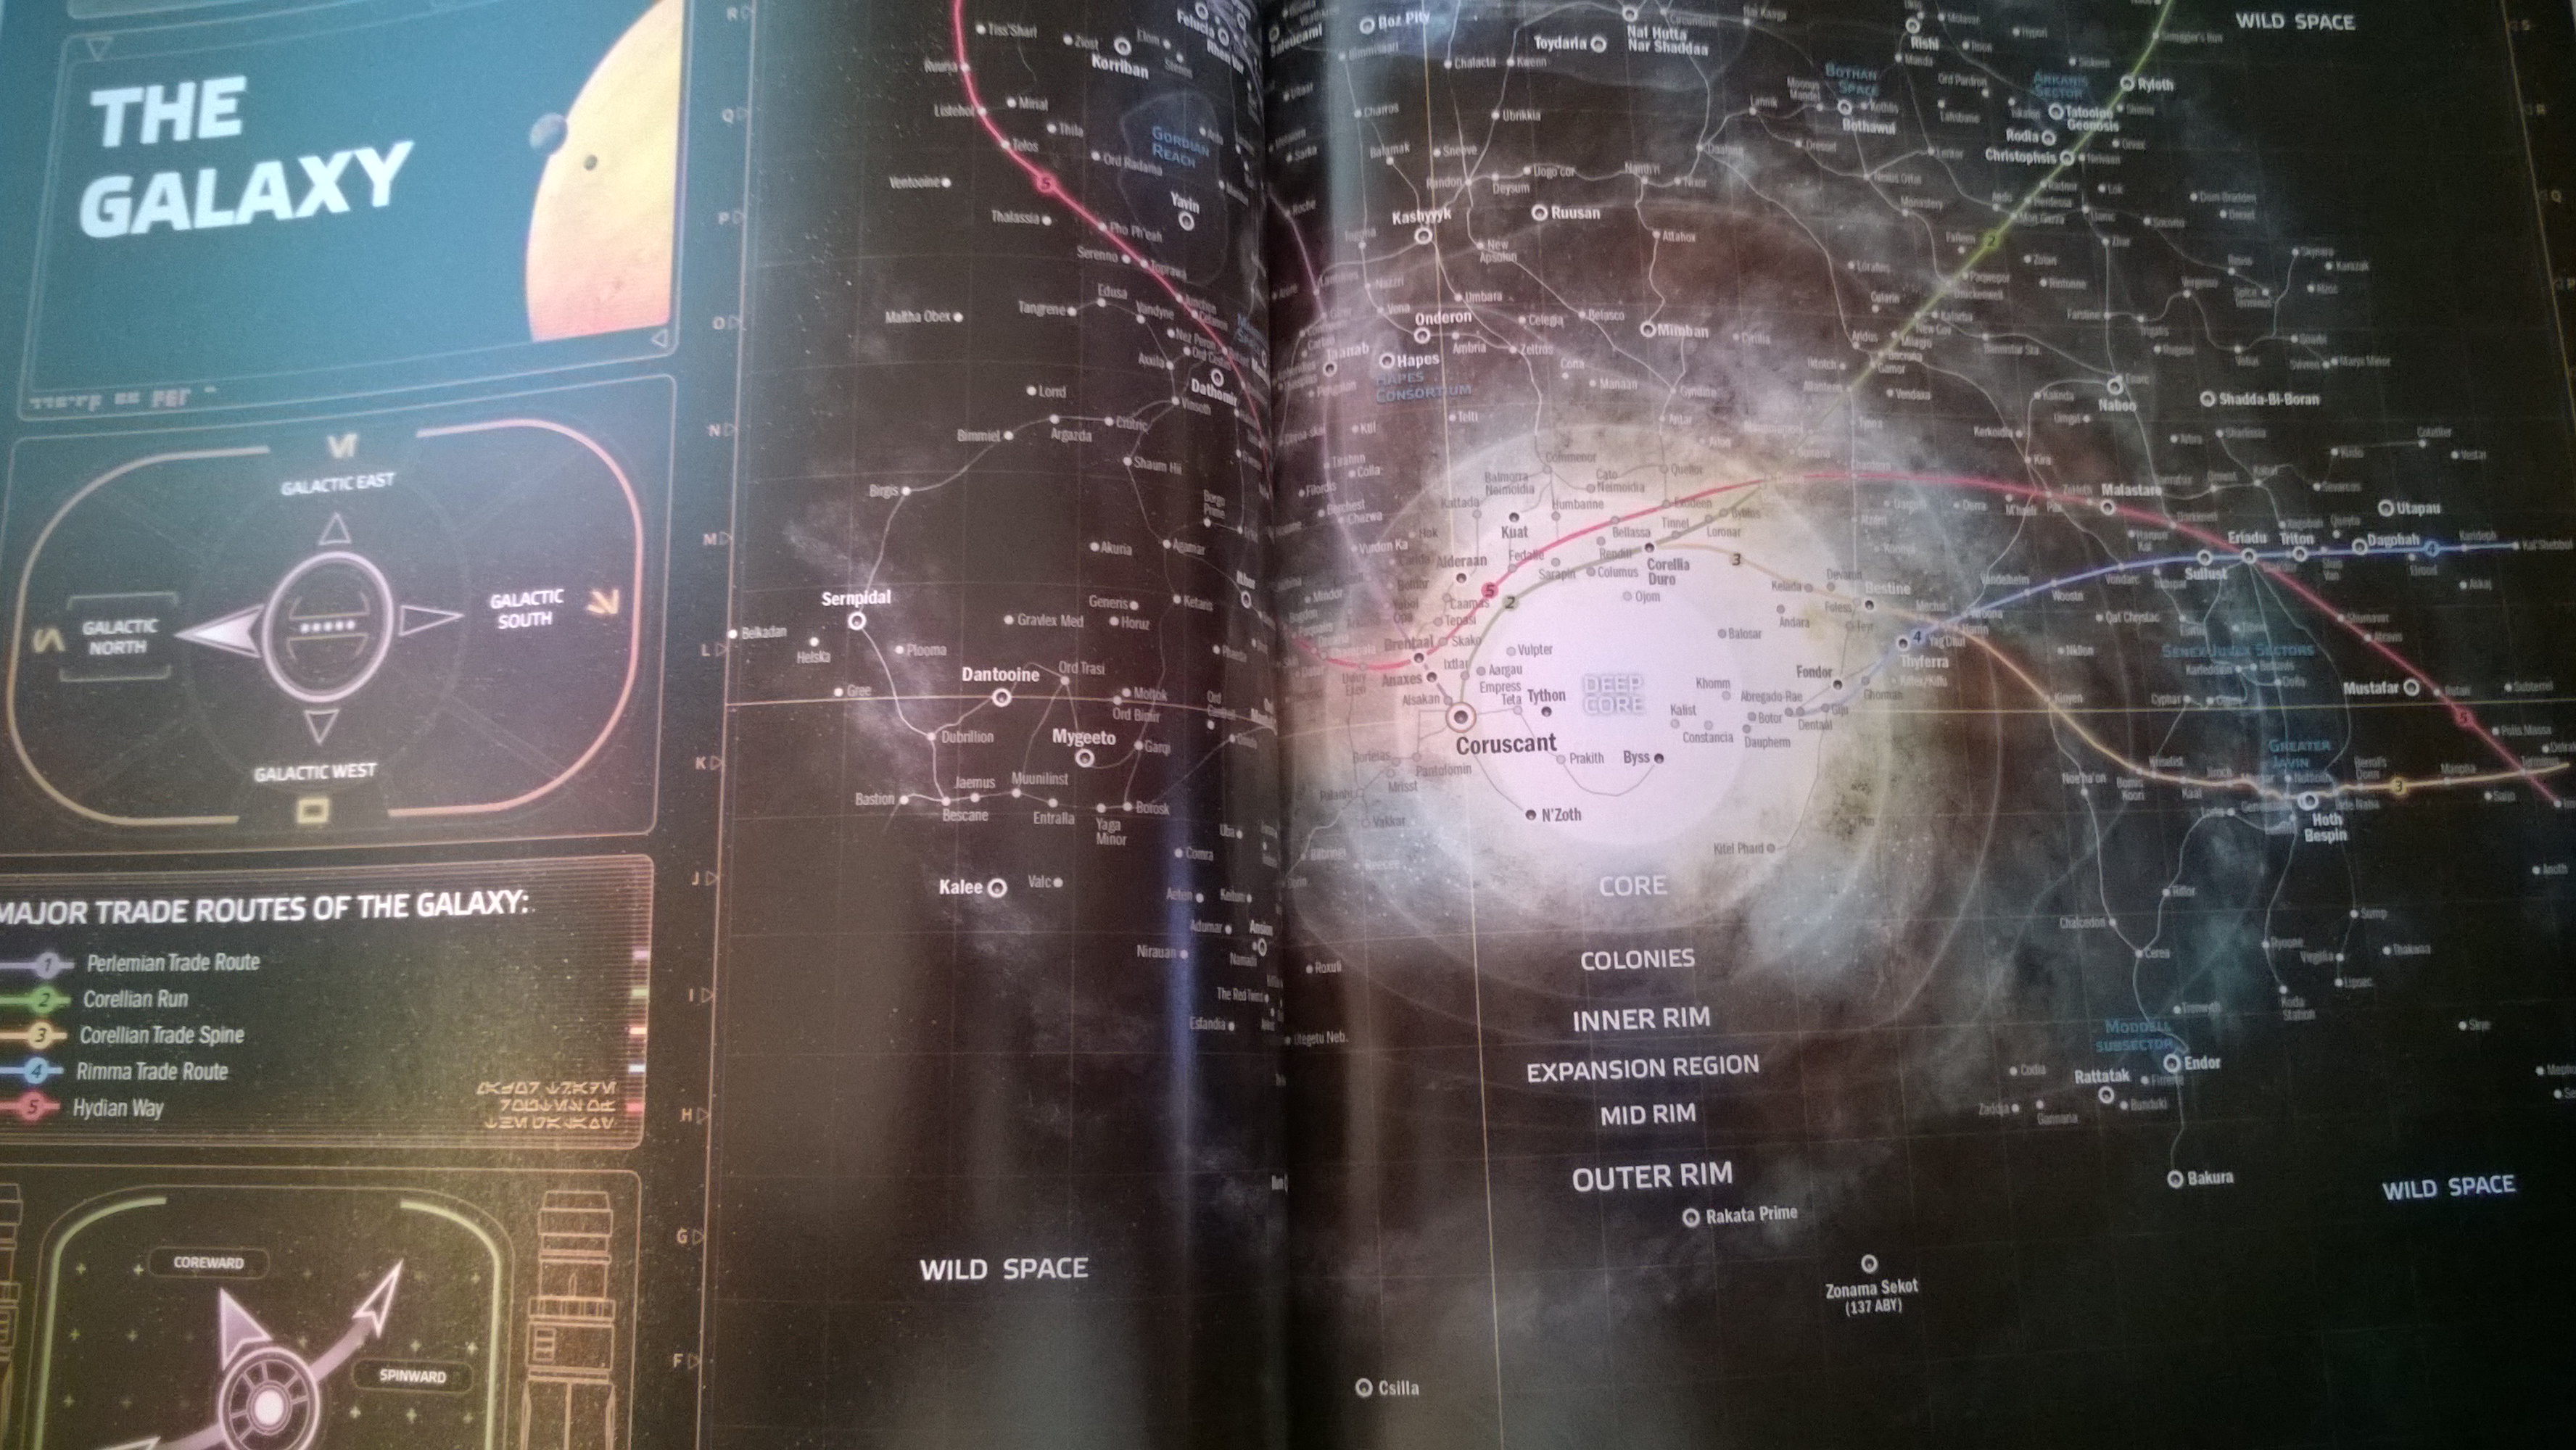 Звездные войны карта войн клонов